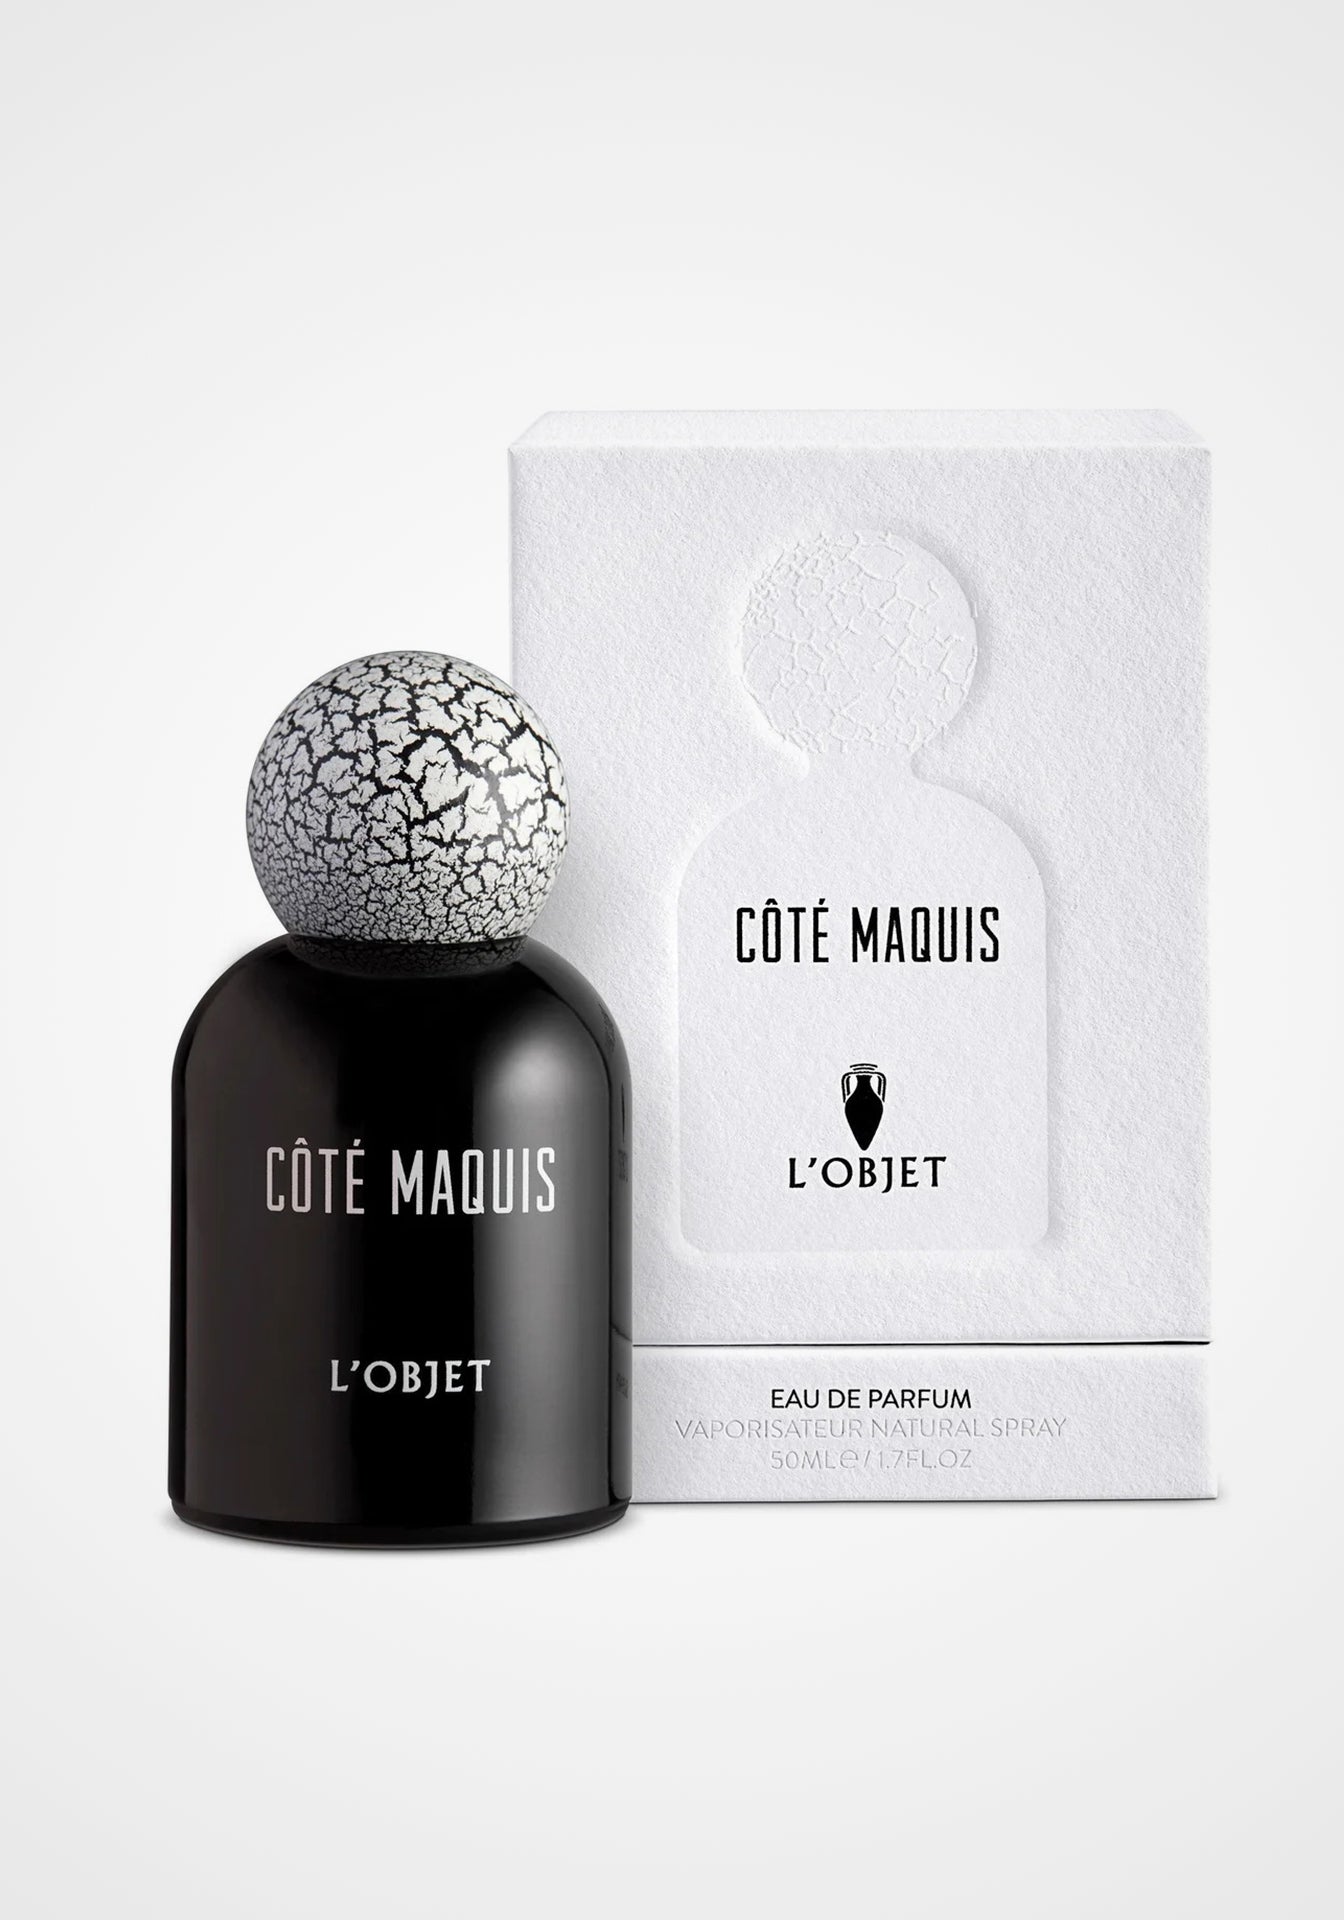 Côté Maquis Eau de Parfum